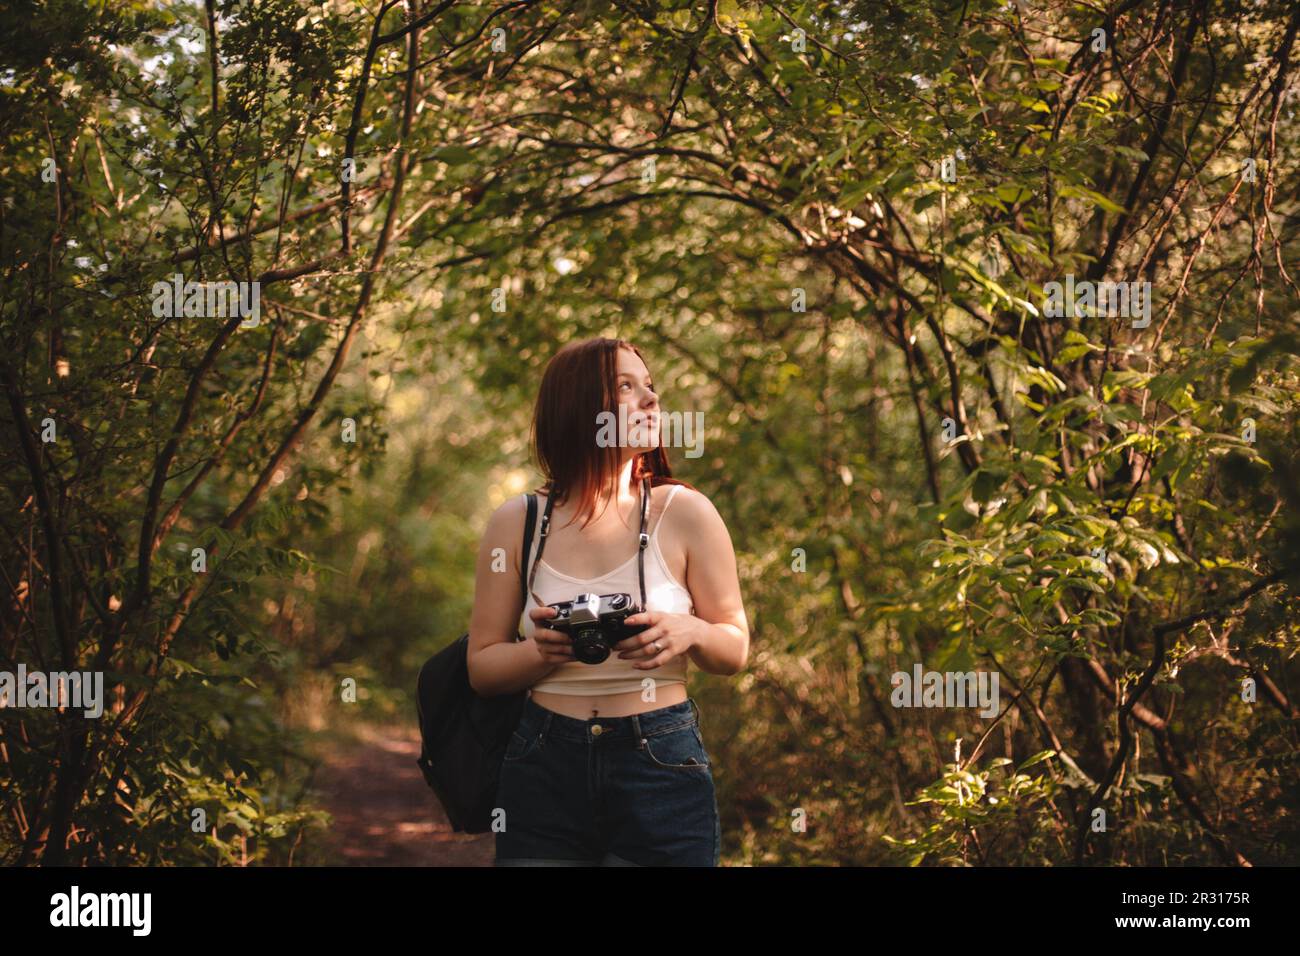 Weibliche Touristin, die im Sommer im Wald eine Kamera hält Stockfoto